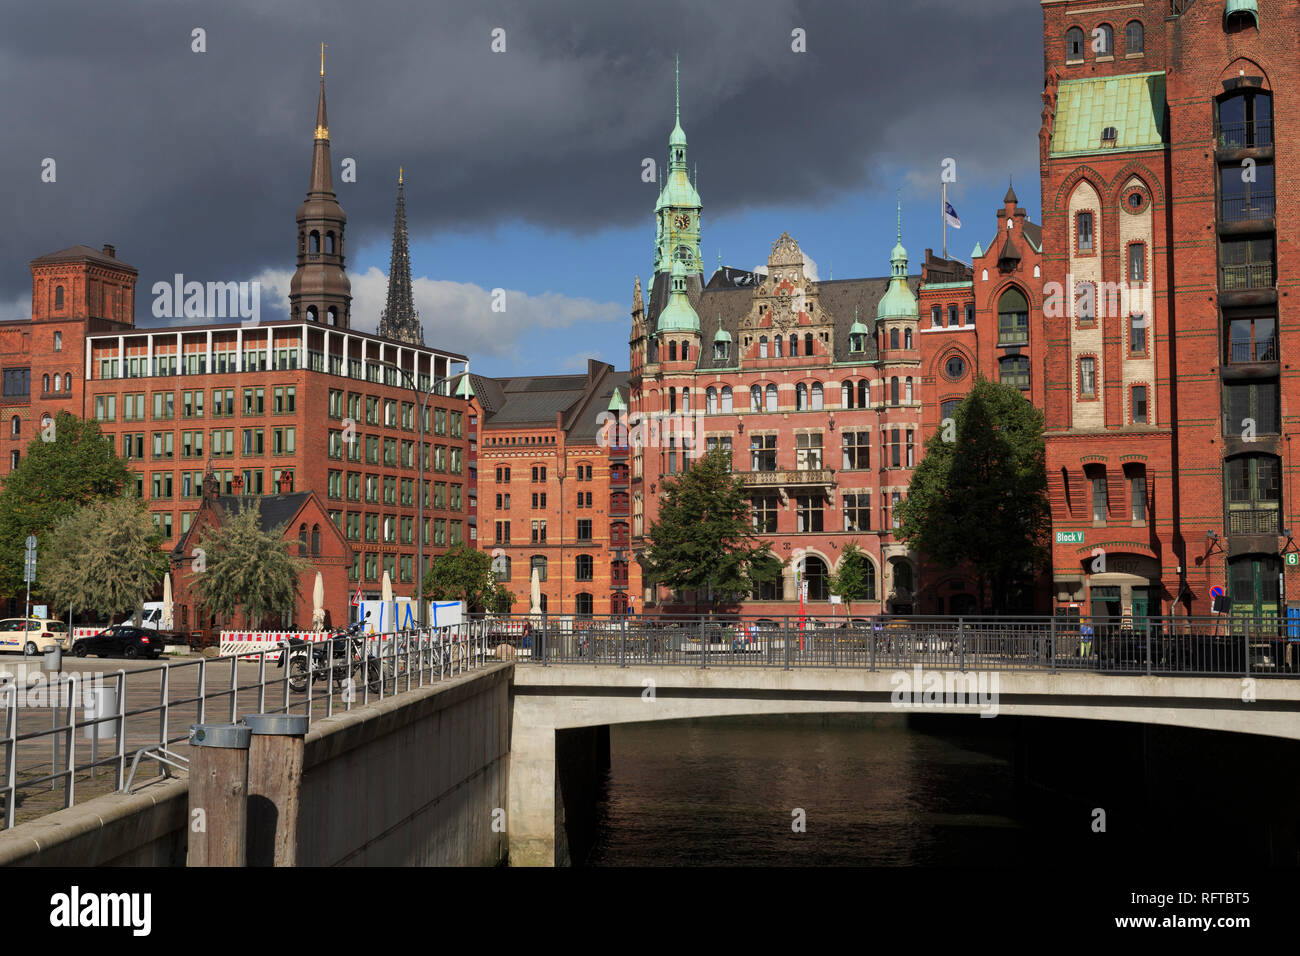 Speicherstadt, HafenCity District, Hamburg, Germany, Europe Stock Photo